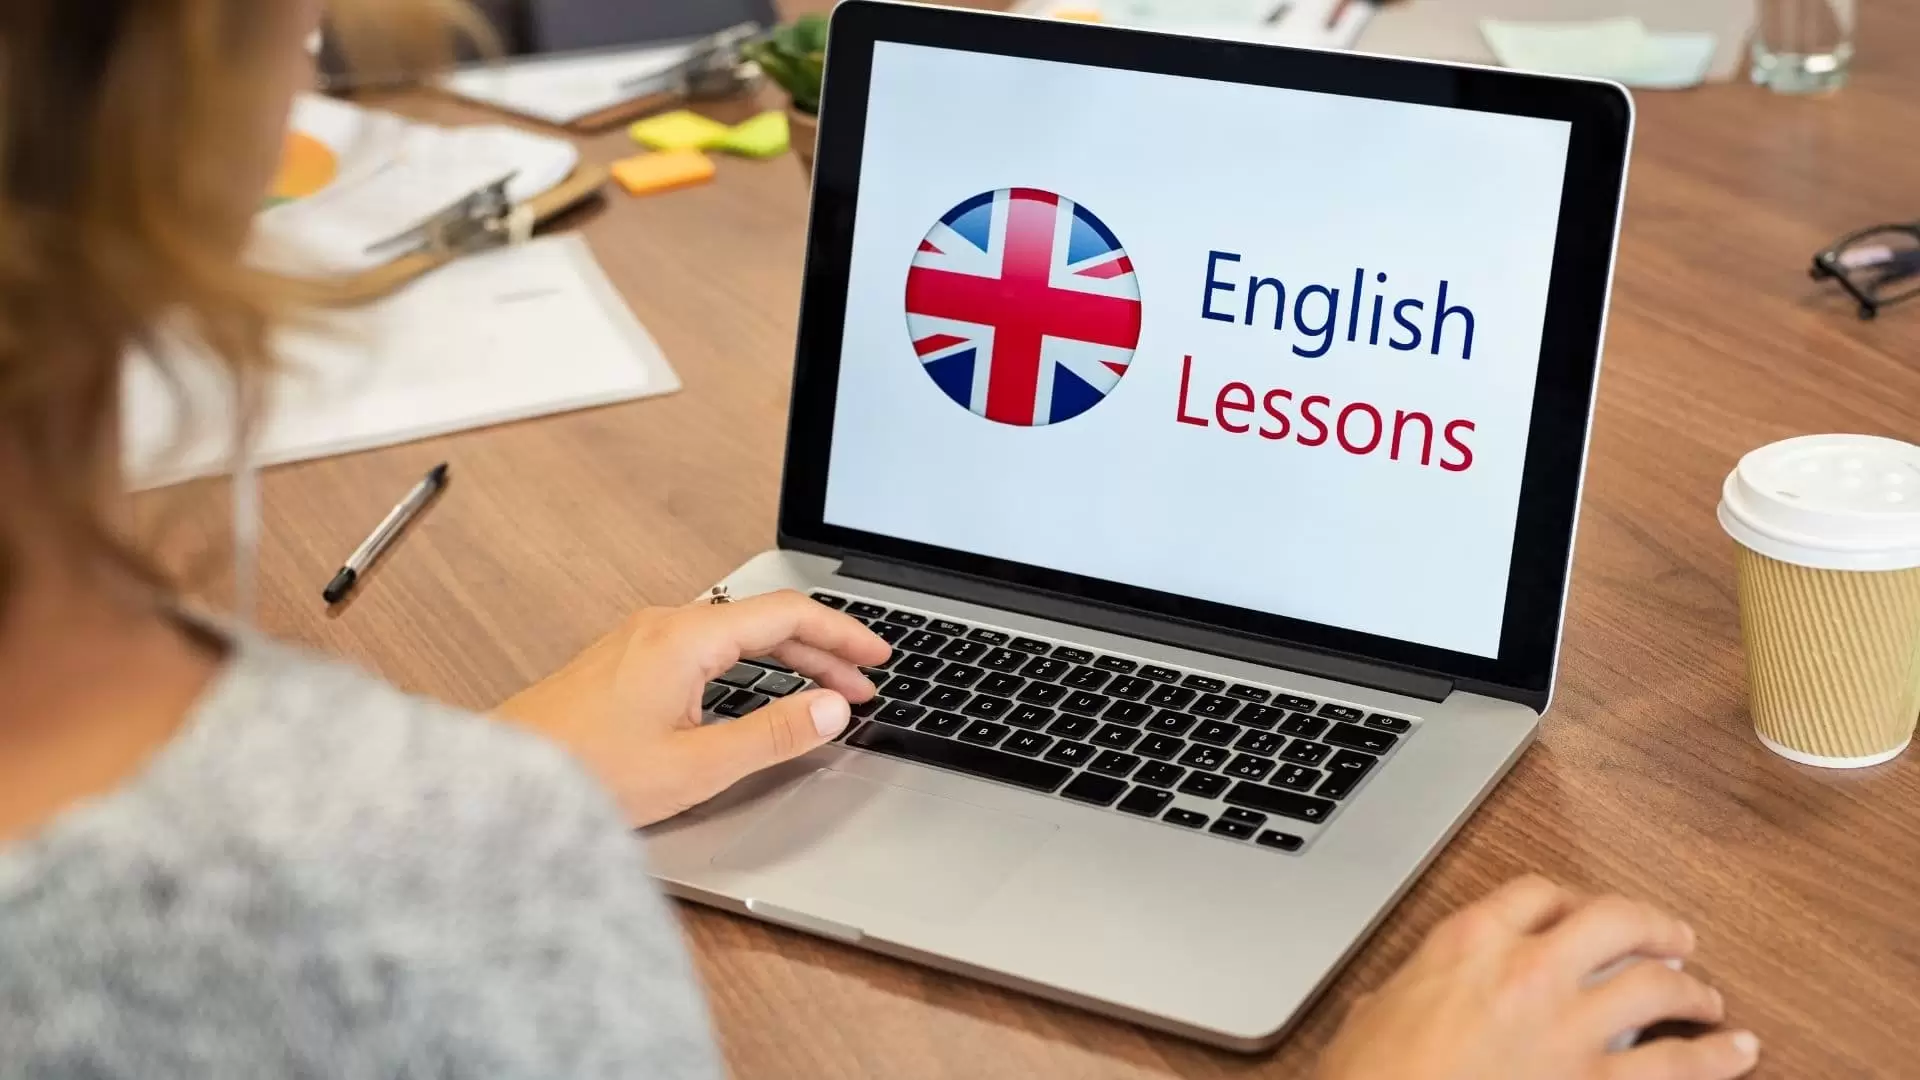 Chương trình học tiếng Anh trực tuyến 1 kèm 1 là một lựa chọn tối ưu dành riêng cho người đi làm